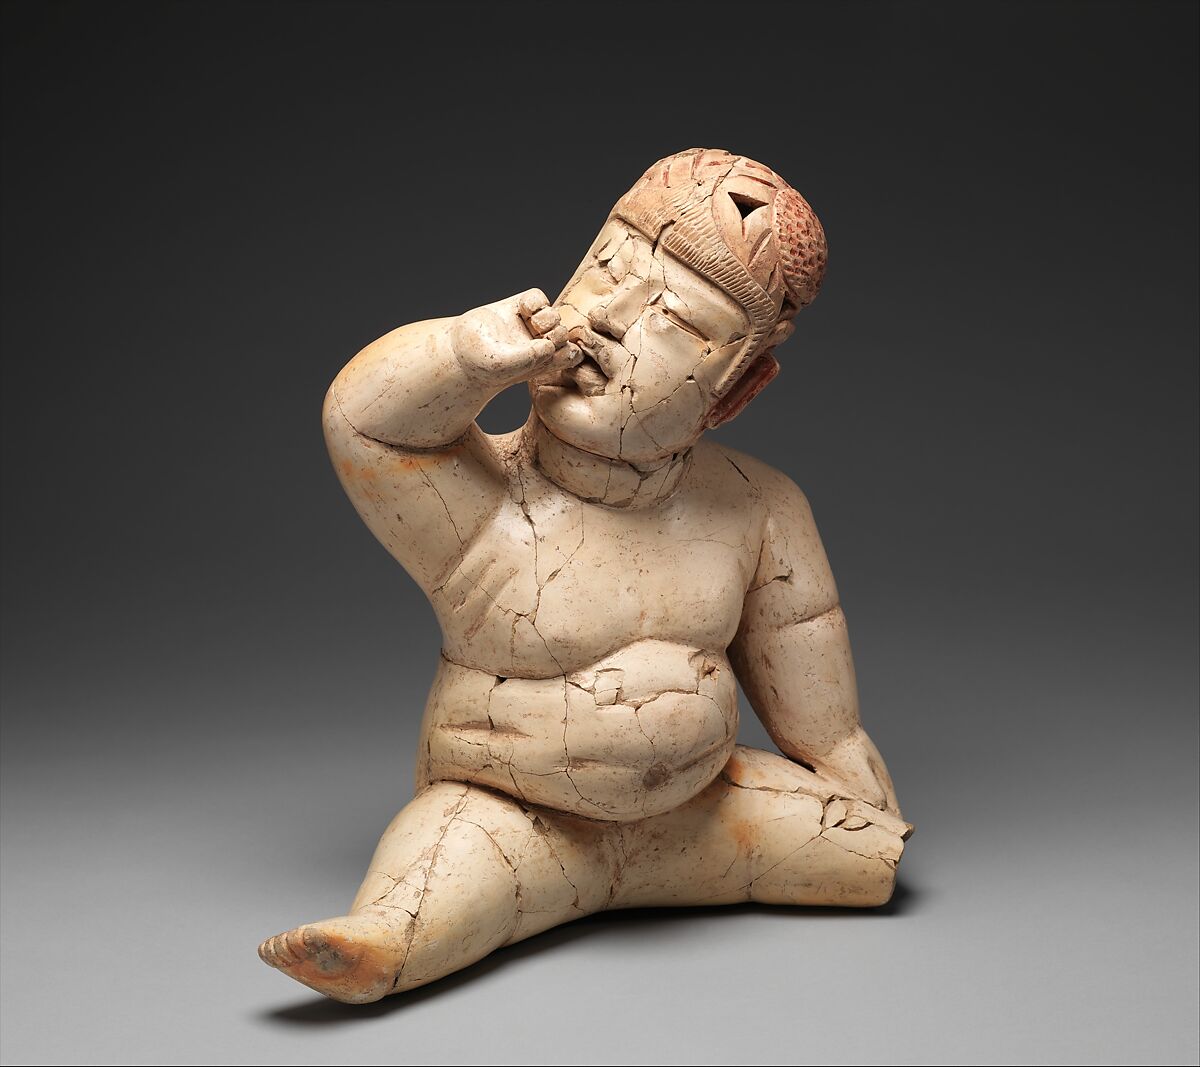 Seated Figure, Ceramic, pigment, Olmec 